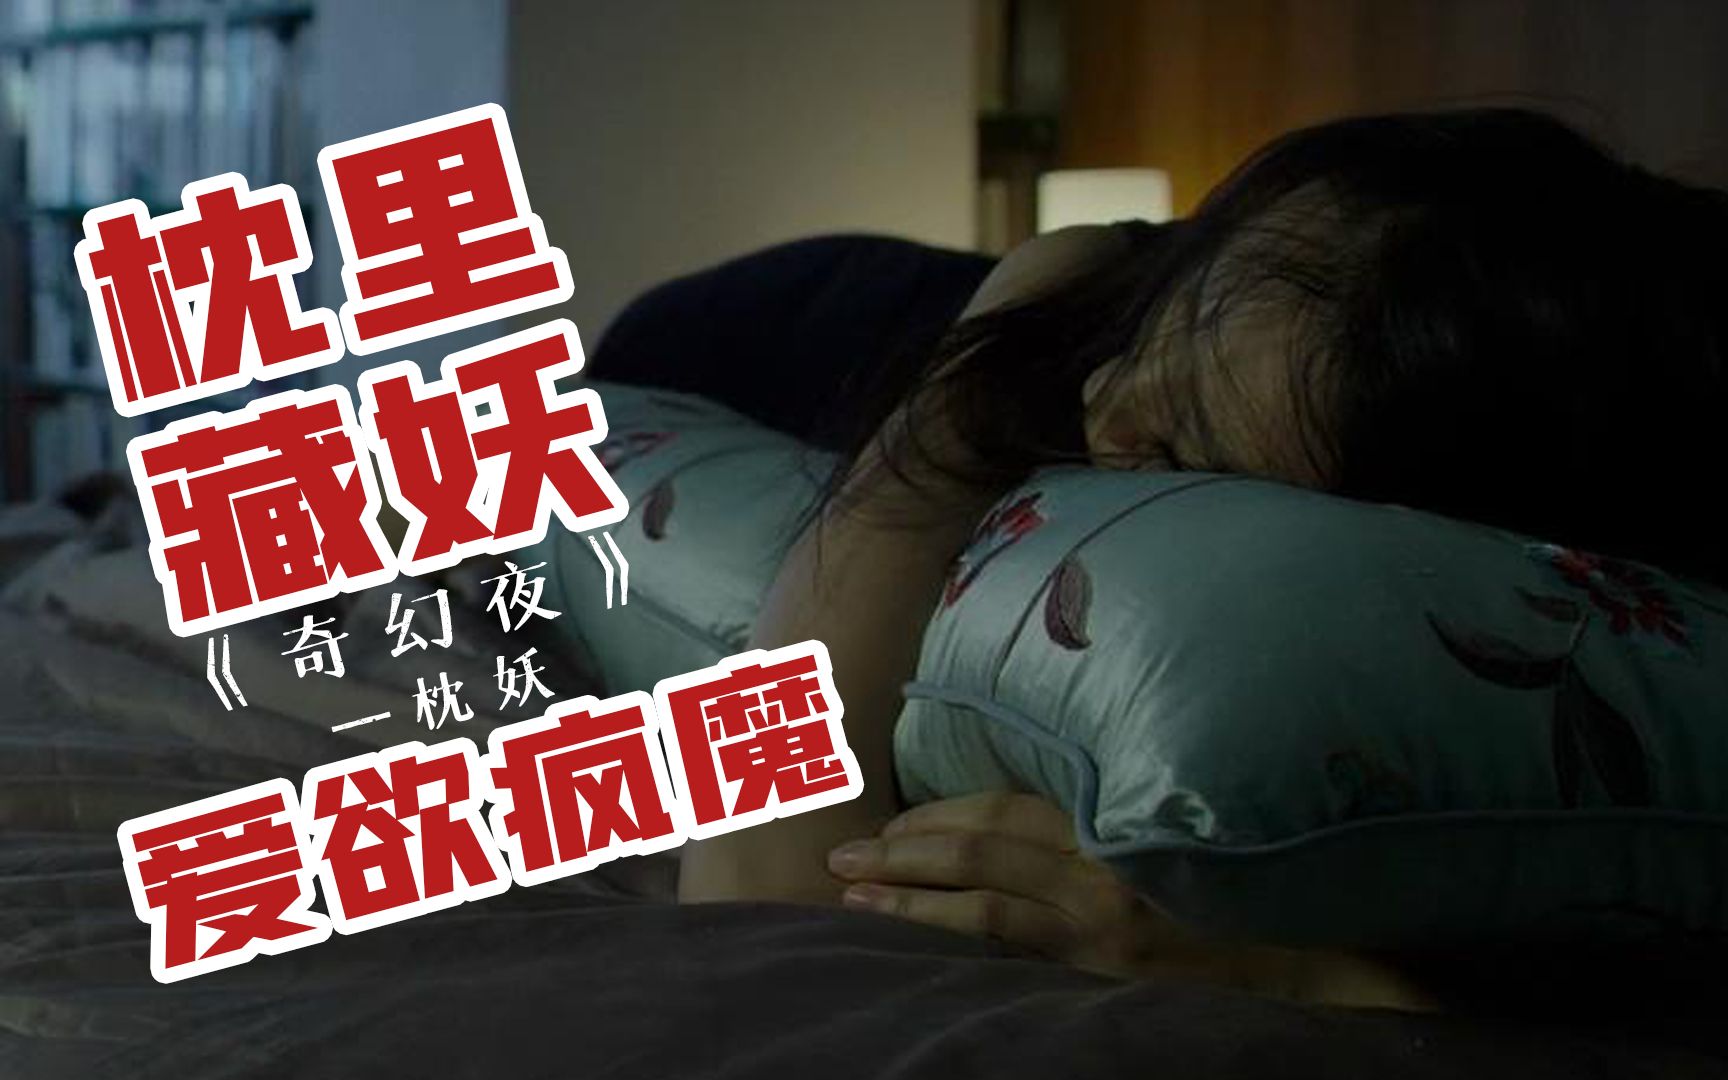 港式鬼魅系列电影《奇幻夜之枕妖》藏在枕头里的呼吸,为爱疯魔的女子